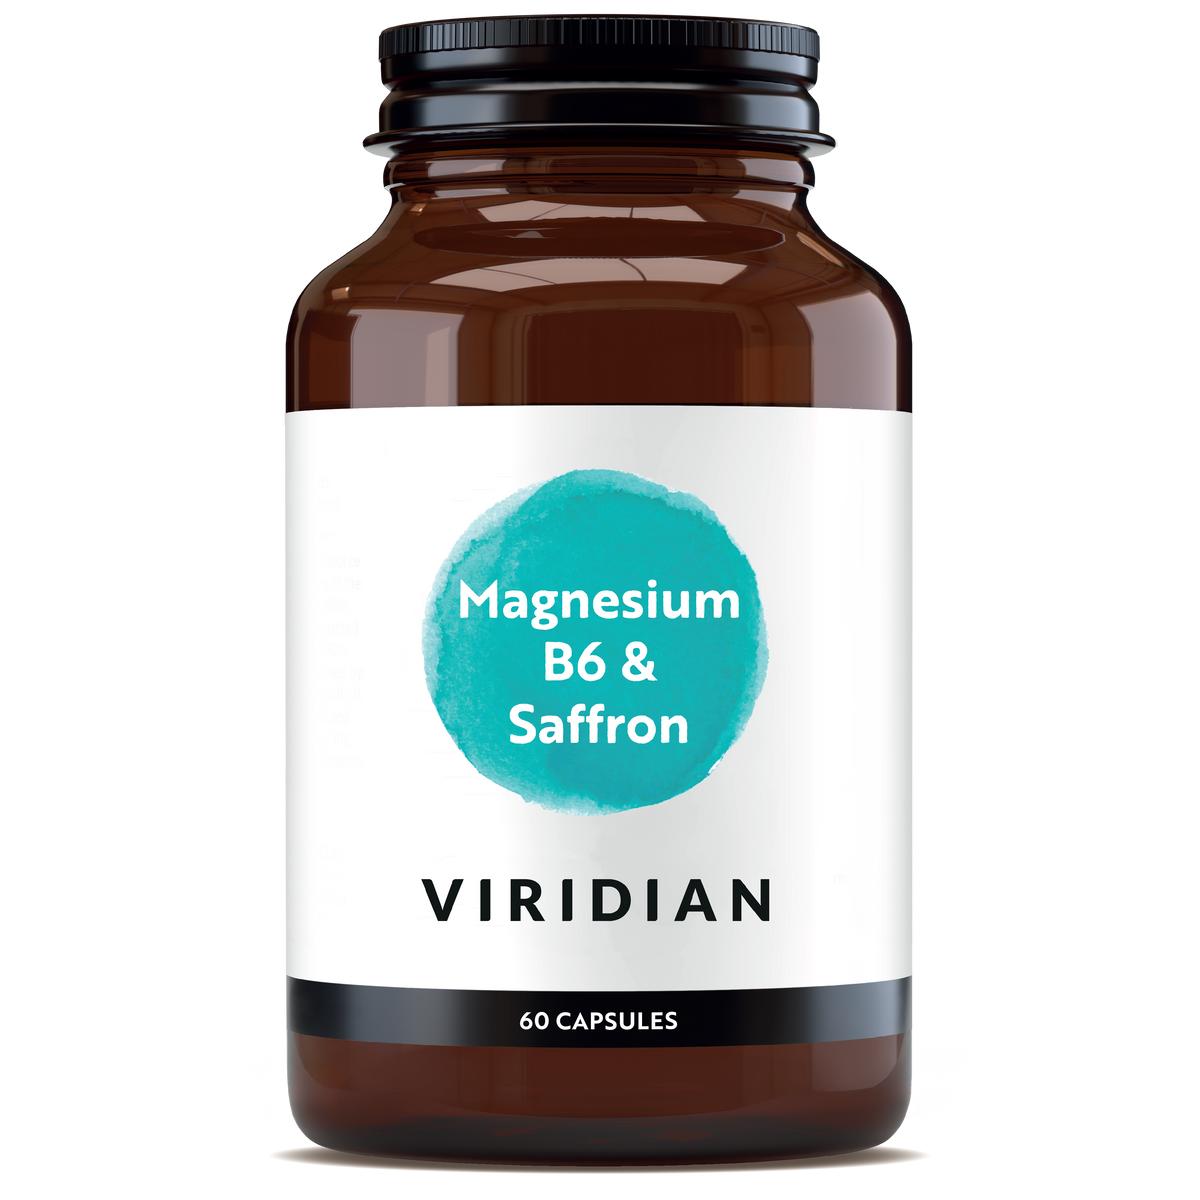 Viridian Magnesium B6 & Saffron, 60VCAPS - Your Health Store